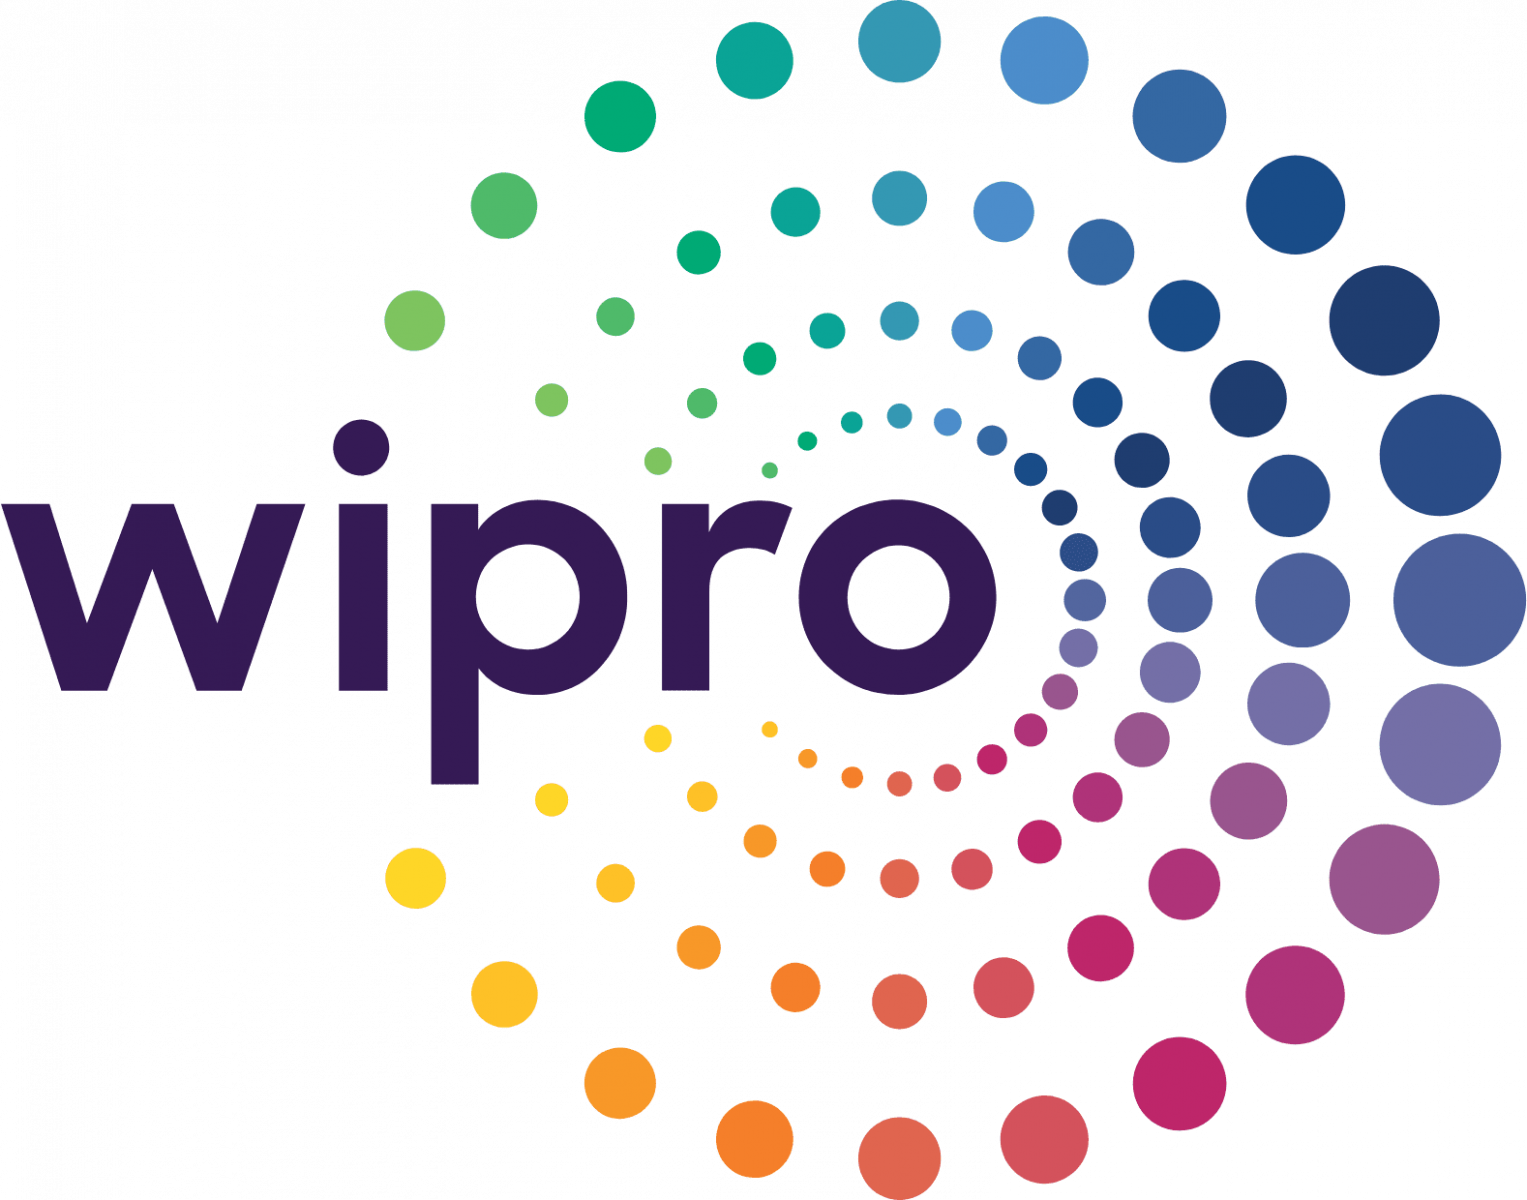 Wipro it companies in Kochi